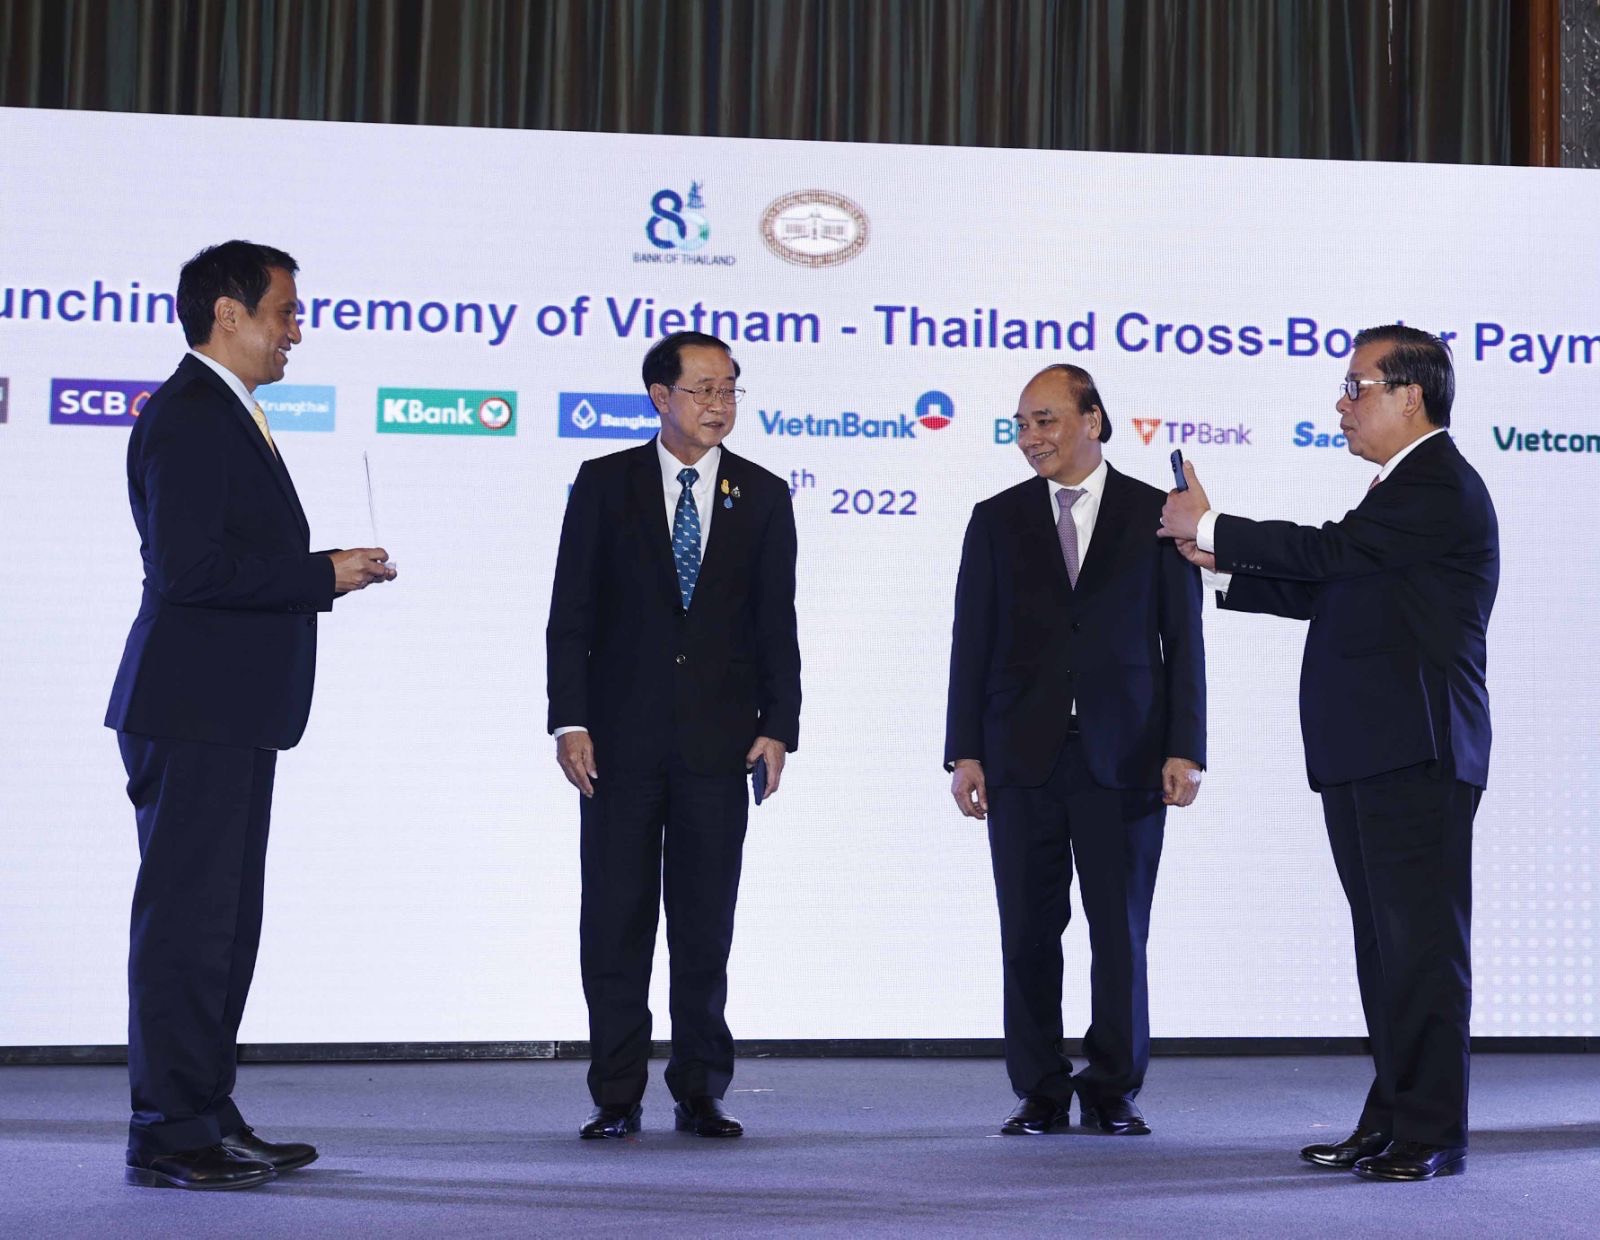 Chủ tịch nước Nguyễn Xuân Phúc và Bộ trưởng Bộ Tài chính Thái Lan chứng kiến Lễ công bố kết nối thanh toán bán lẻ ứng dụng mã phản hồi nhanh (QR code) giữa Việt Nam  – Thái Lan